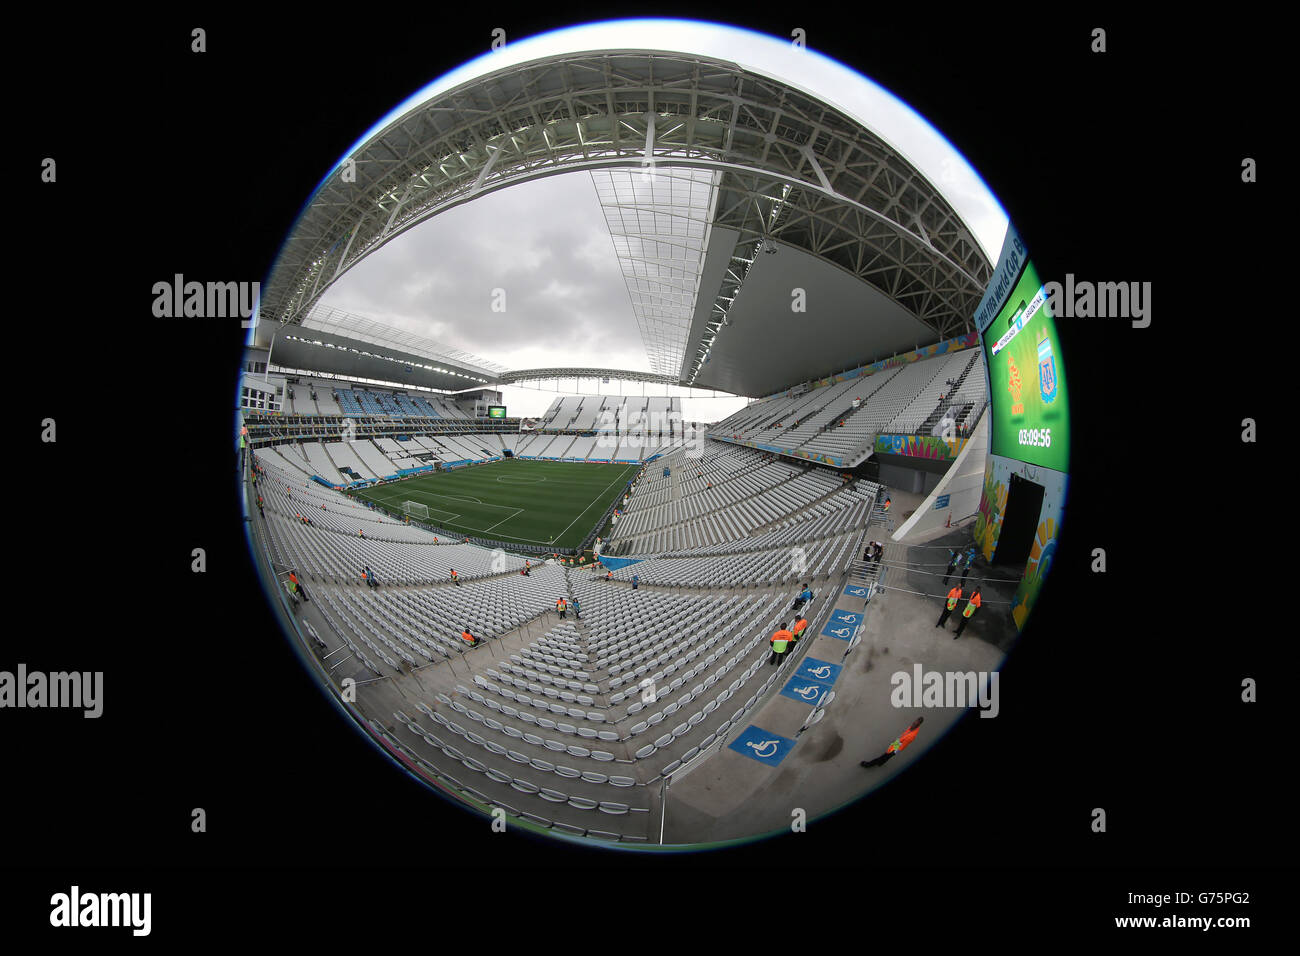 Fútbol - Copa Mundial de la FIFA 2014 - Semi Final - Países Bajos contra Argentina - Arena de Sao Paulo. Vista general de gran angular de la Arena de Sao Paulo Foto de stock